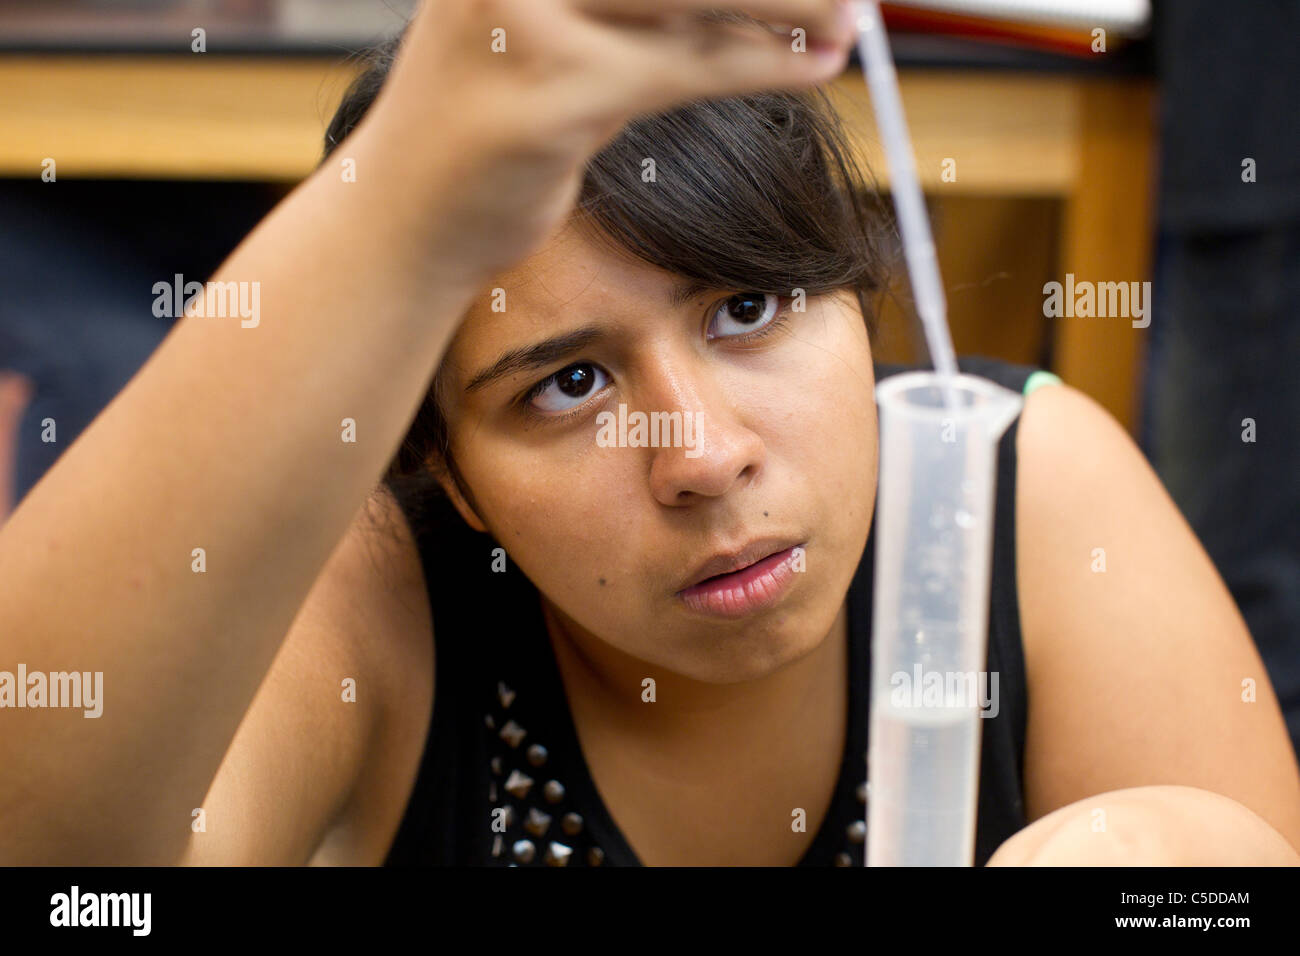 Hispanic weibliche High-School-Schüler misst Pipette Flüssigkeit in einen Messzylinder in High-School-Science-Lab-Klasse Stockfoto